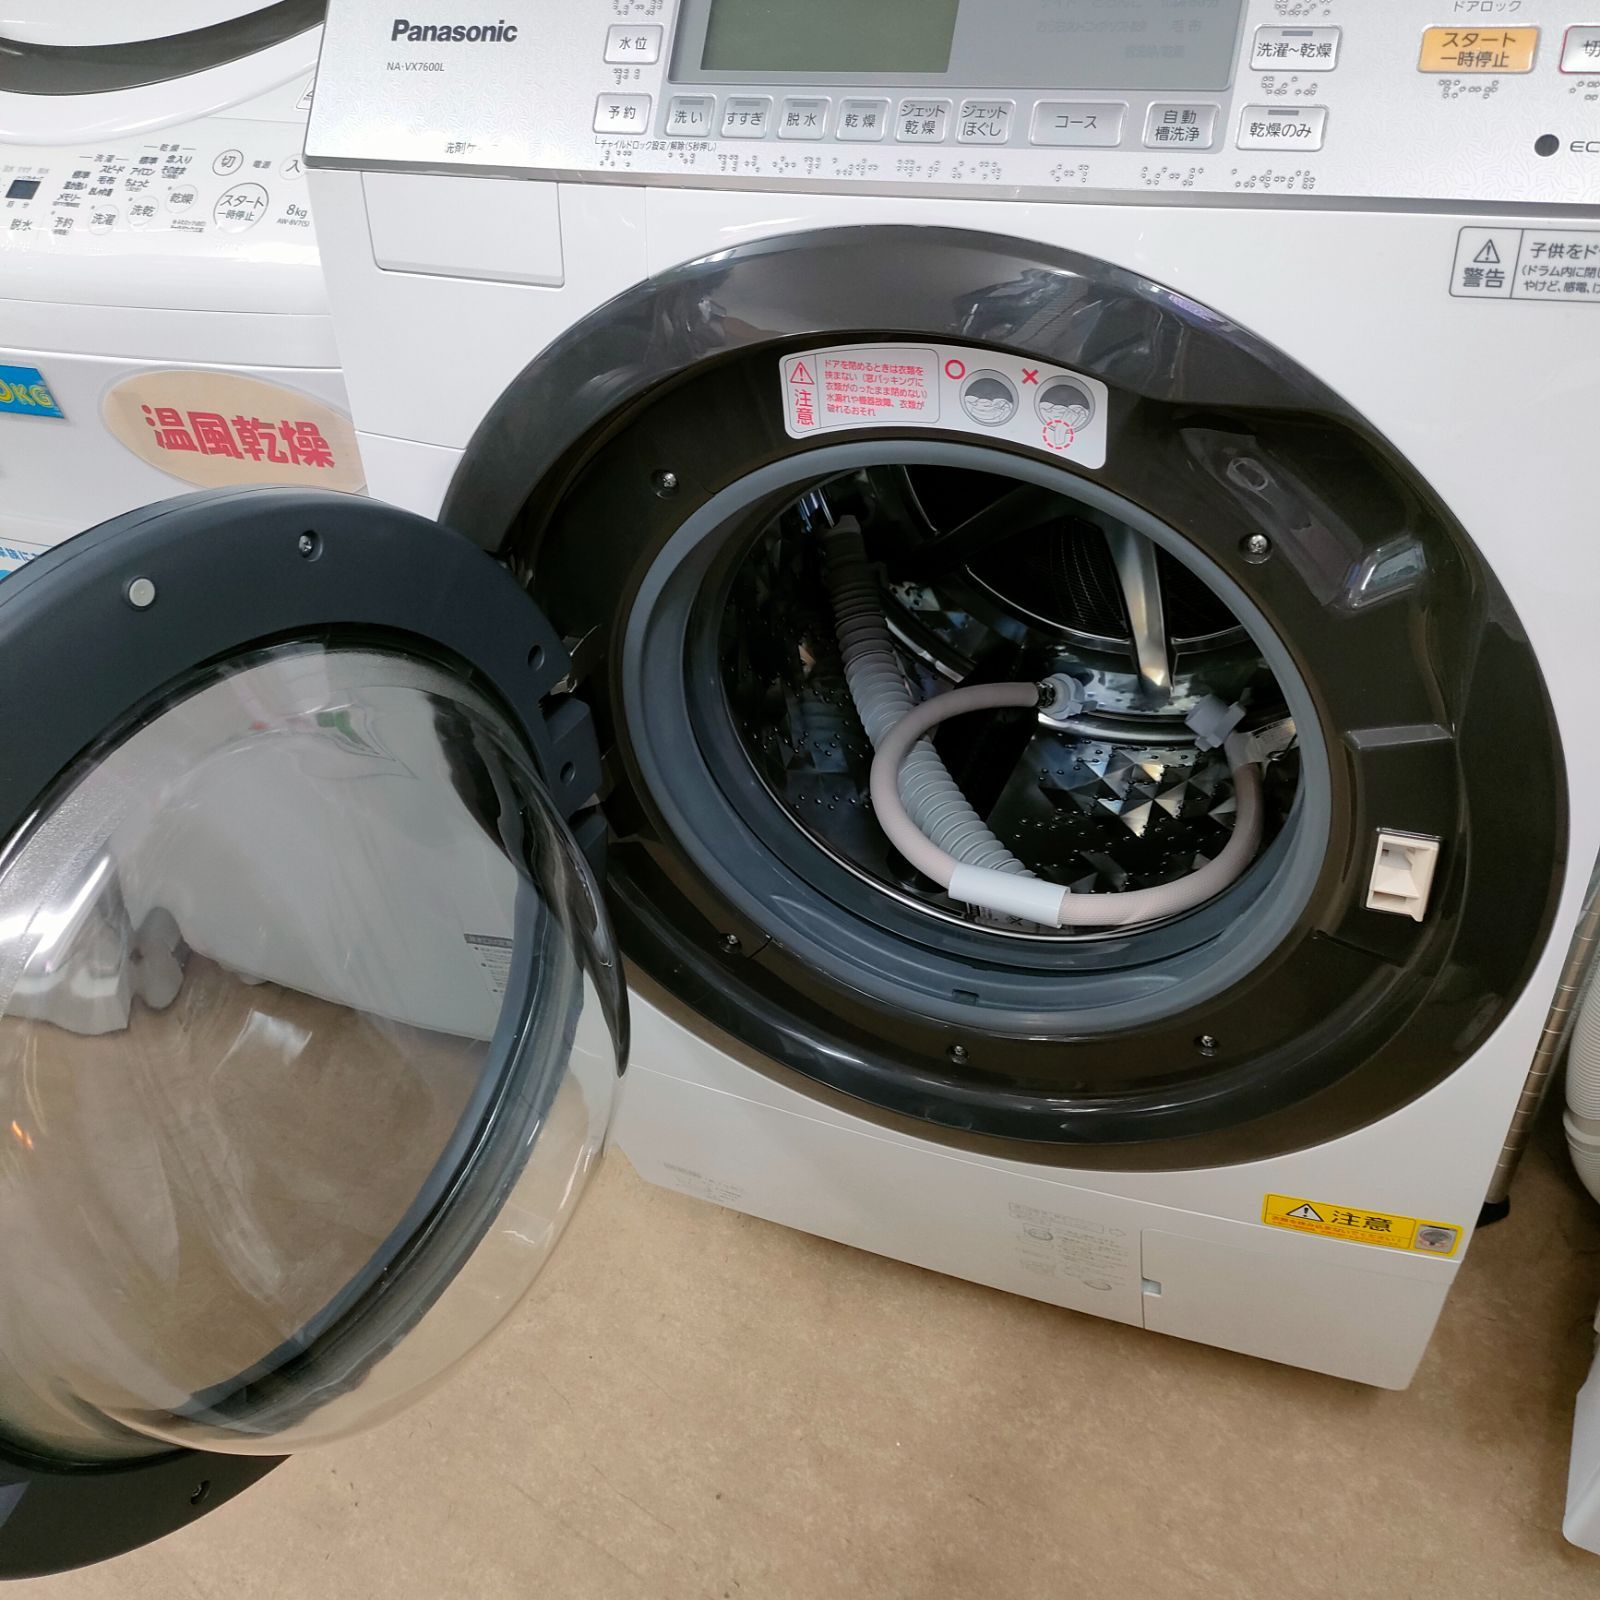 ◇Panaonic ドラム式洗濯乾燥機 10kg/6kg NA-VX7600L - メルカリ